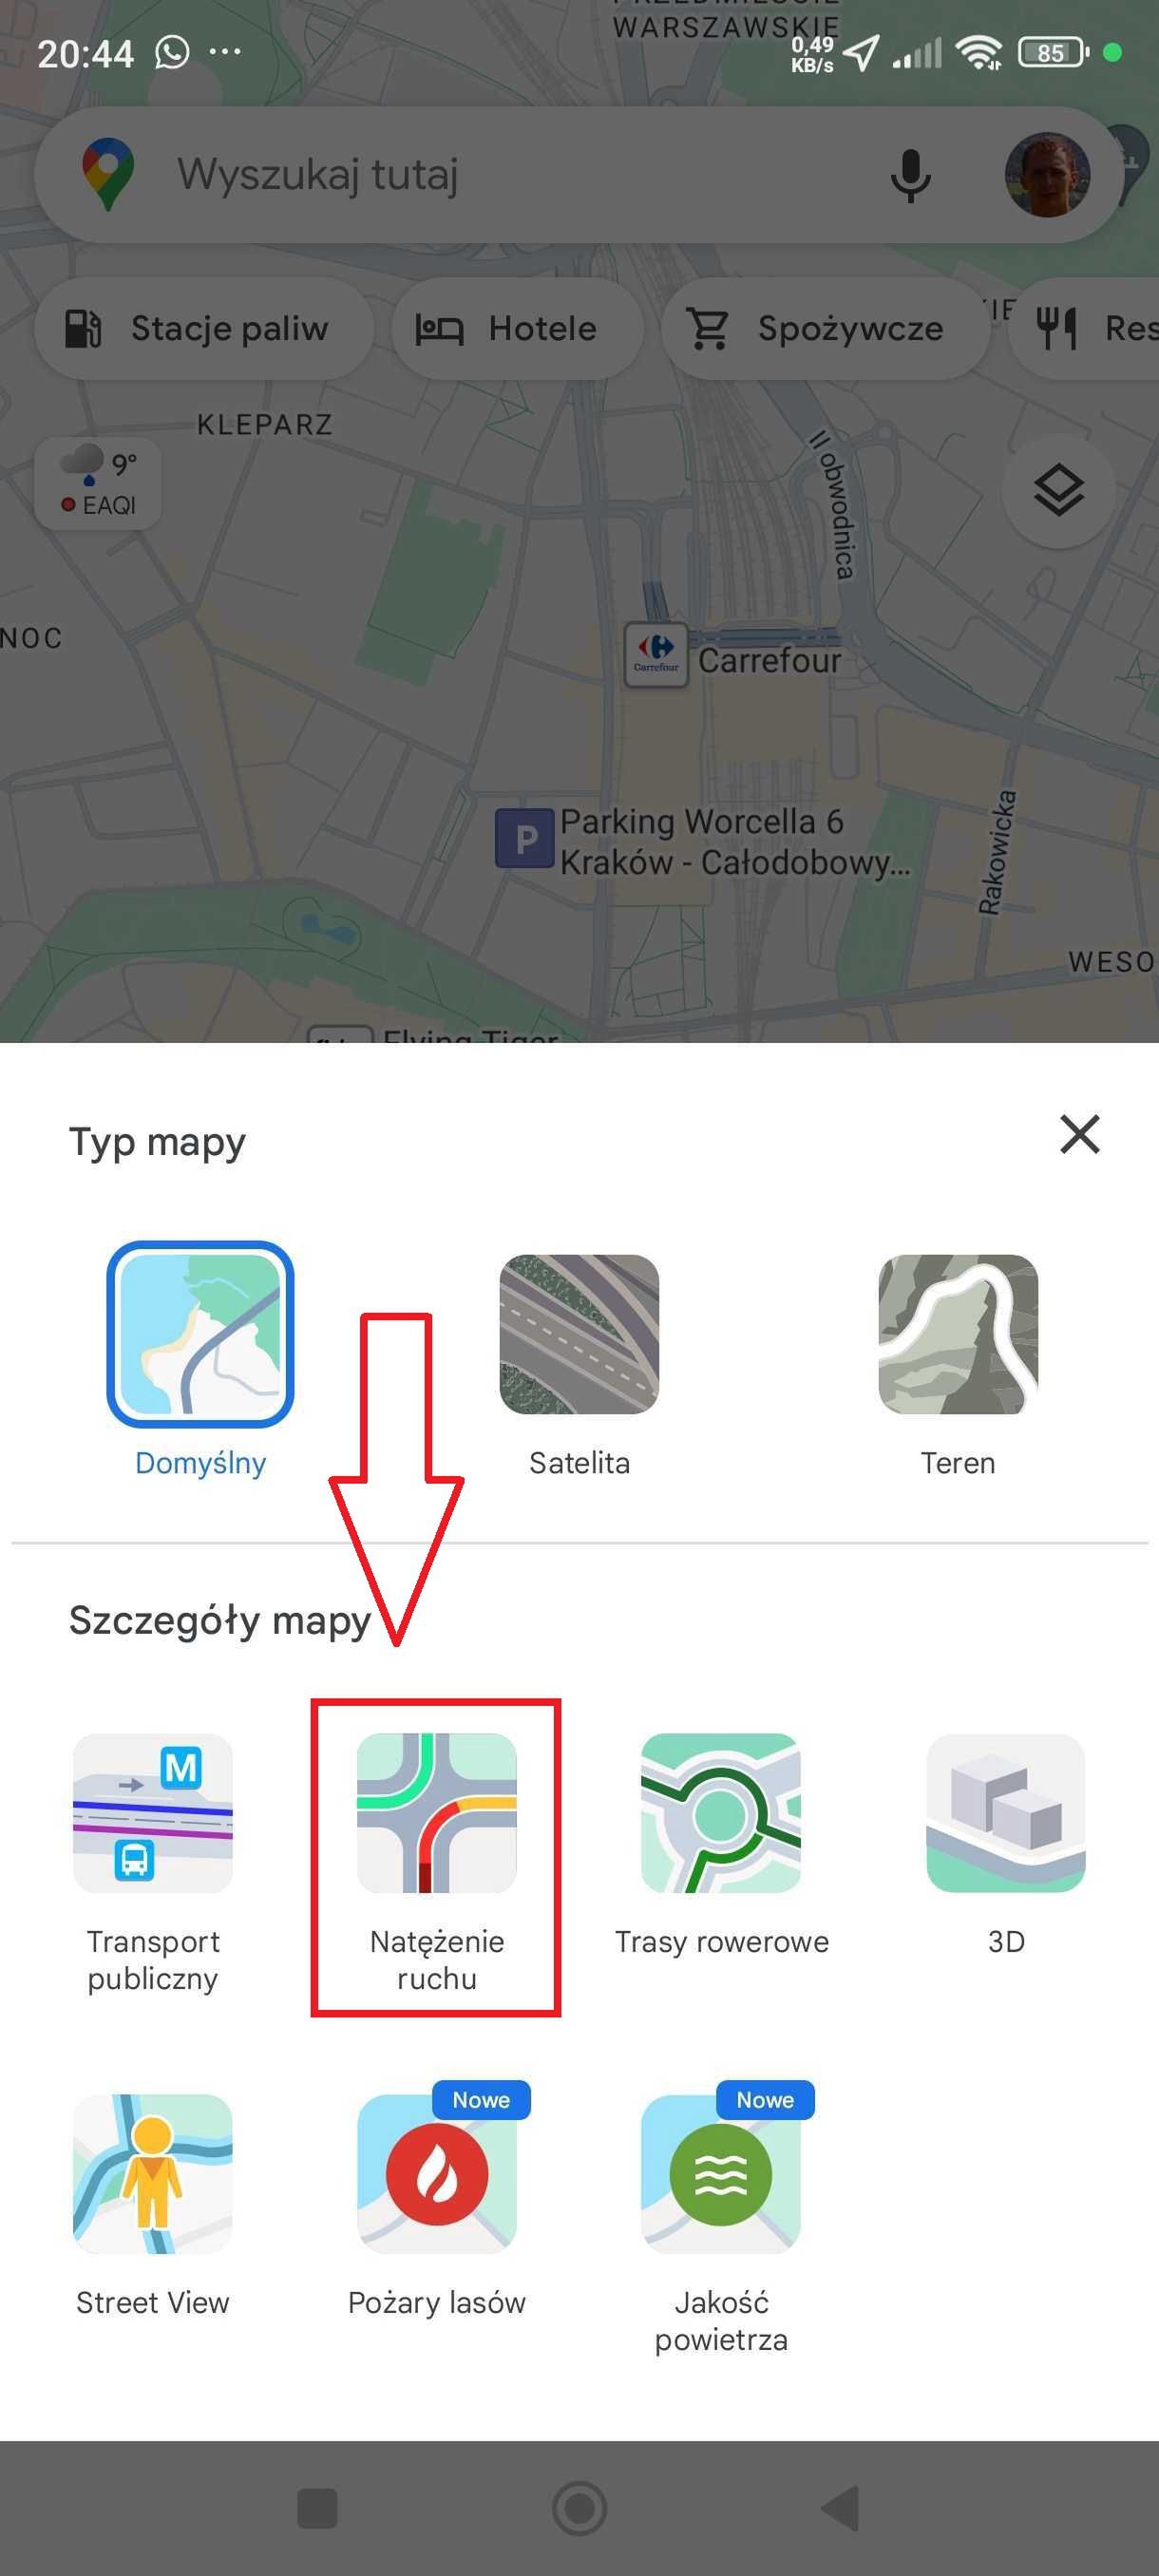 Jak włączyć natężenie ruchu w Google Maps na telefonie?